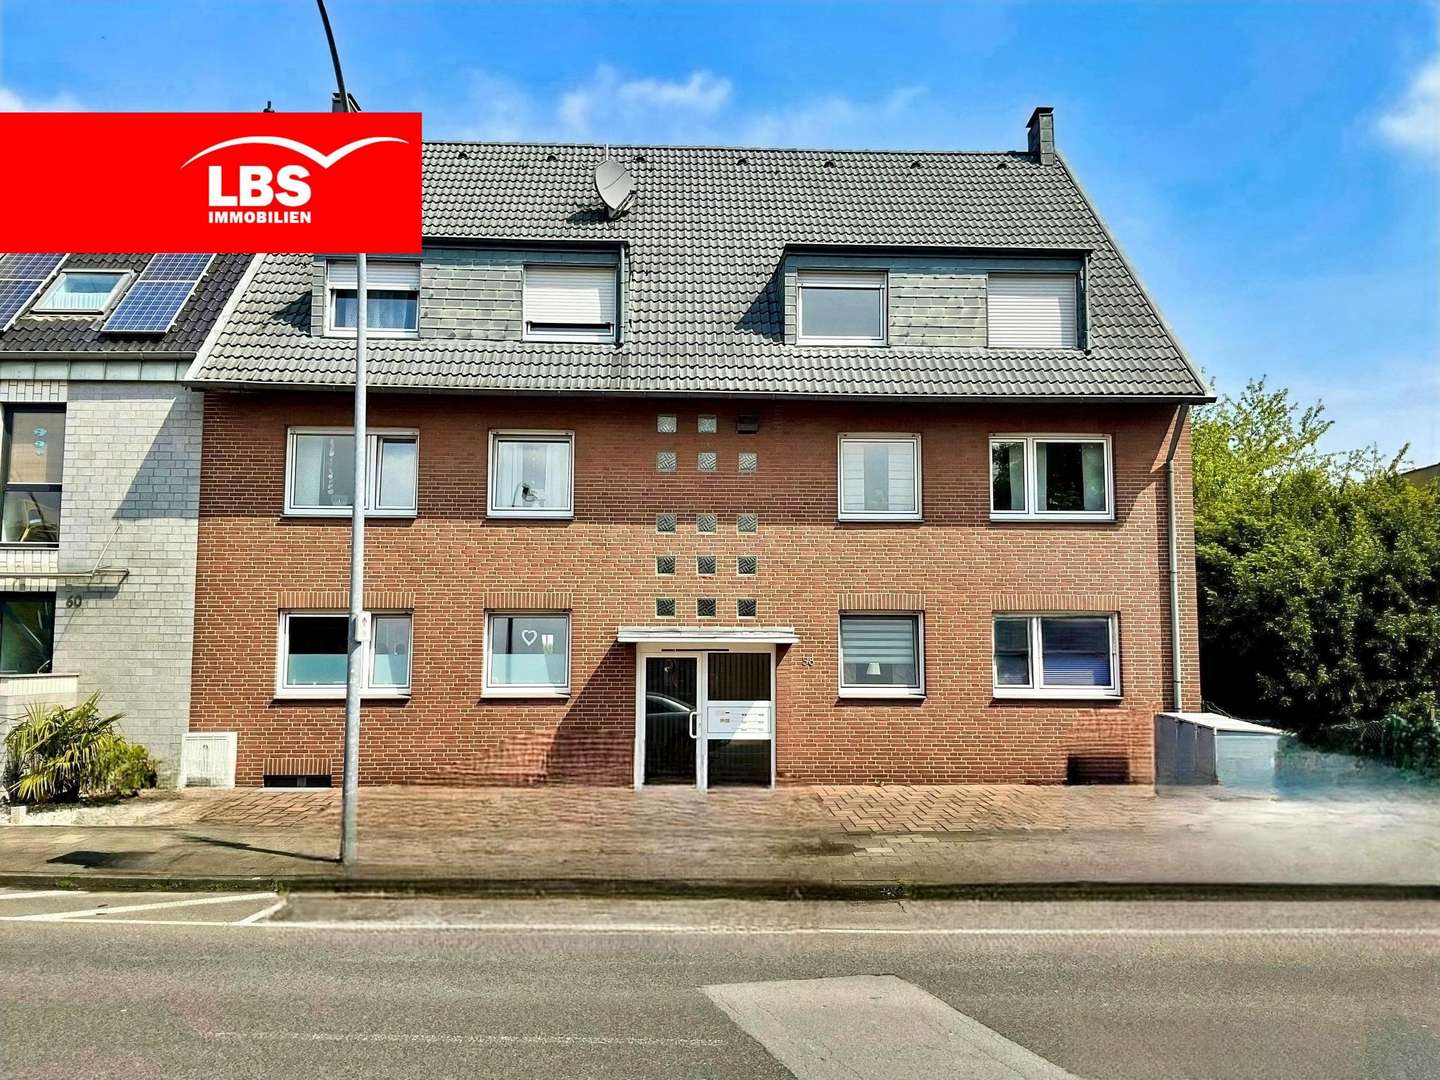 Hausansicht - Mehrfamilienhaus in 41066 Mönchengladbach mit 416m² als Kapitalanlage kaufen